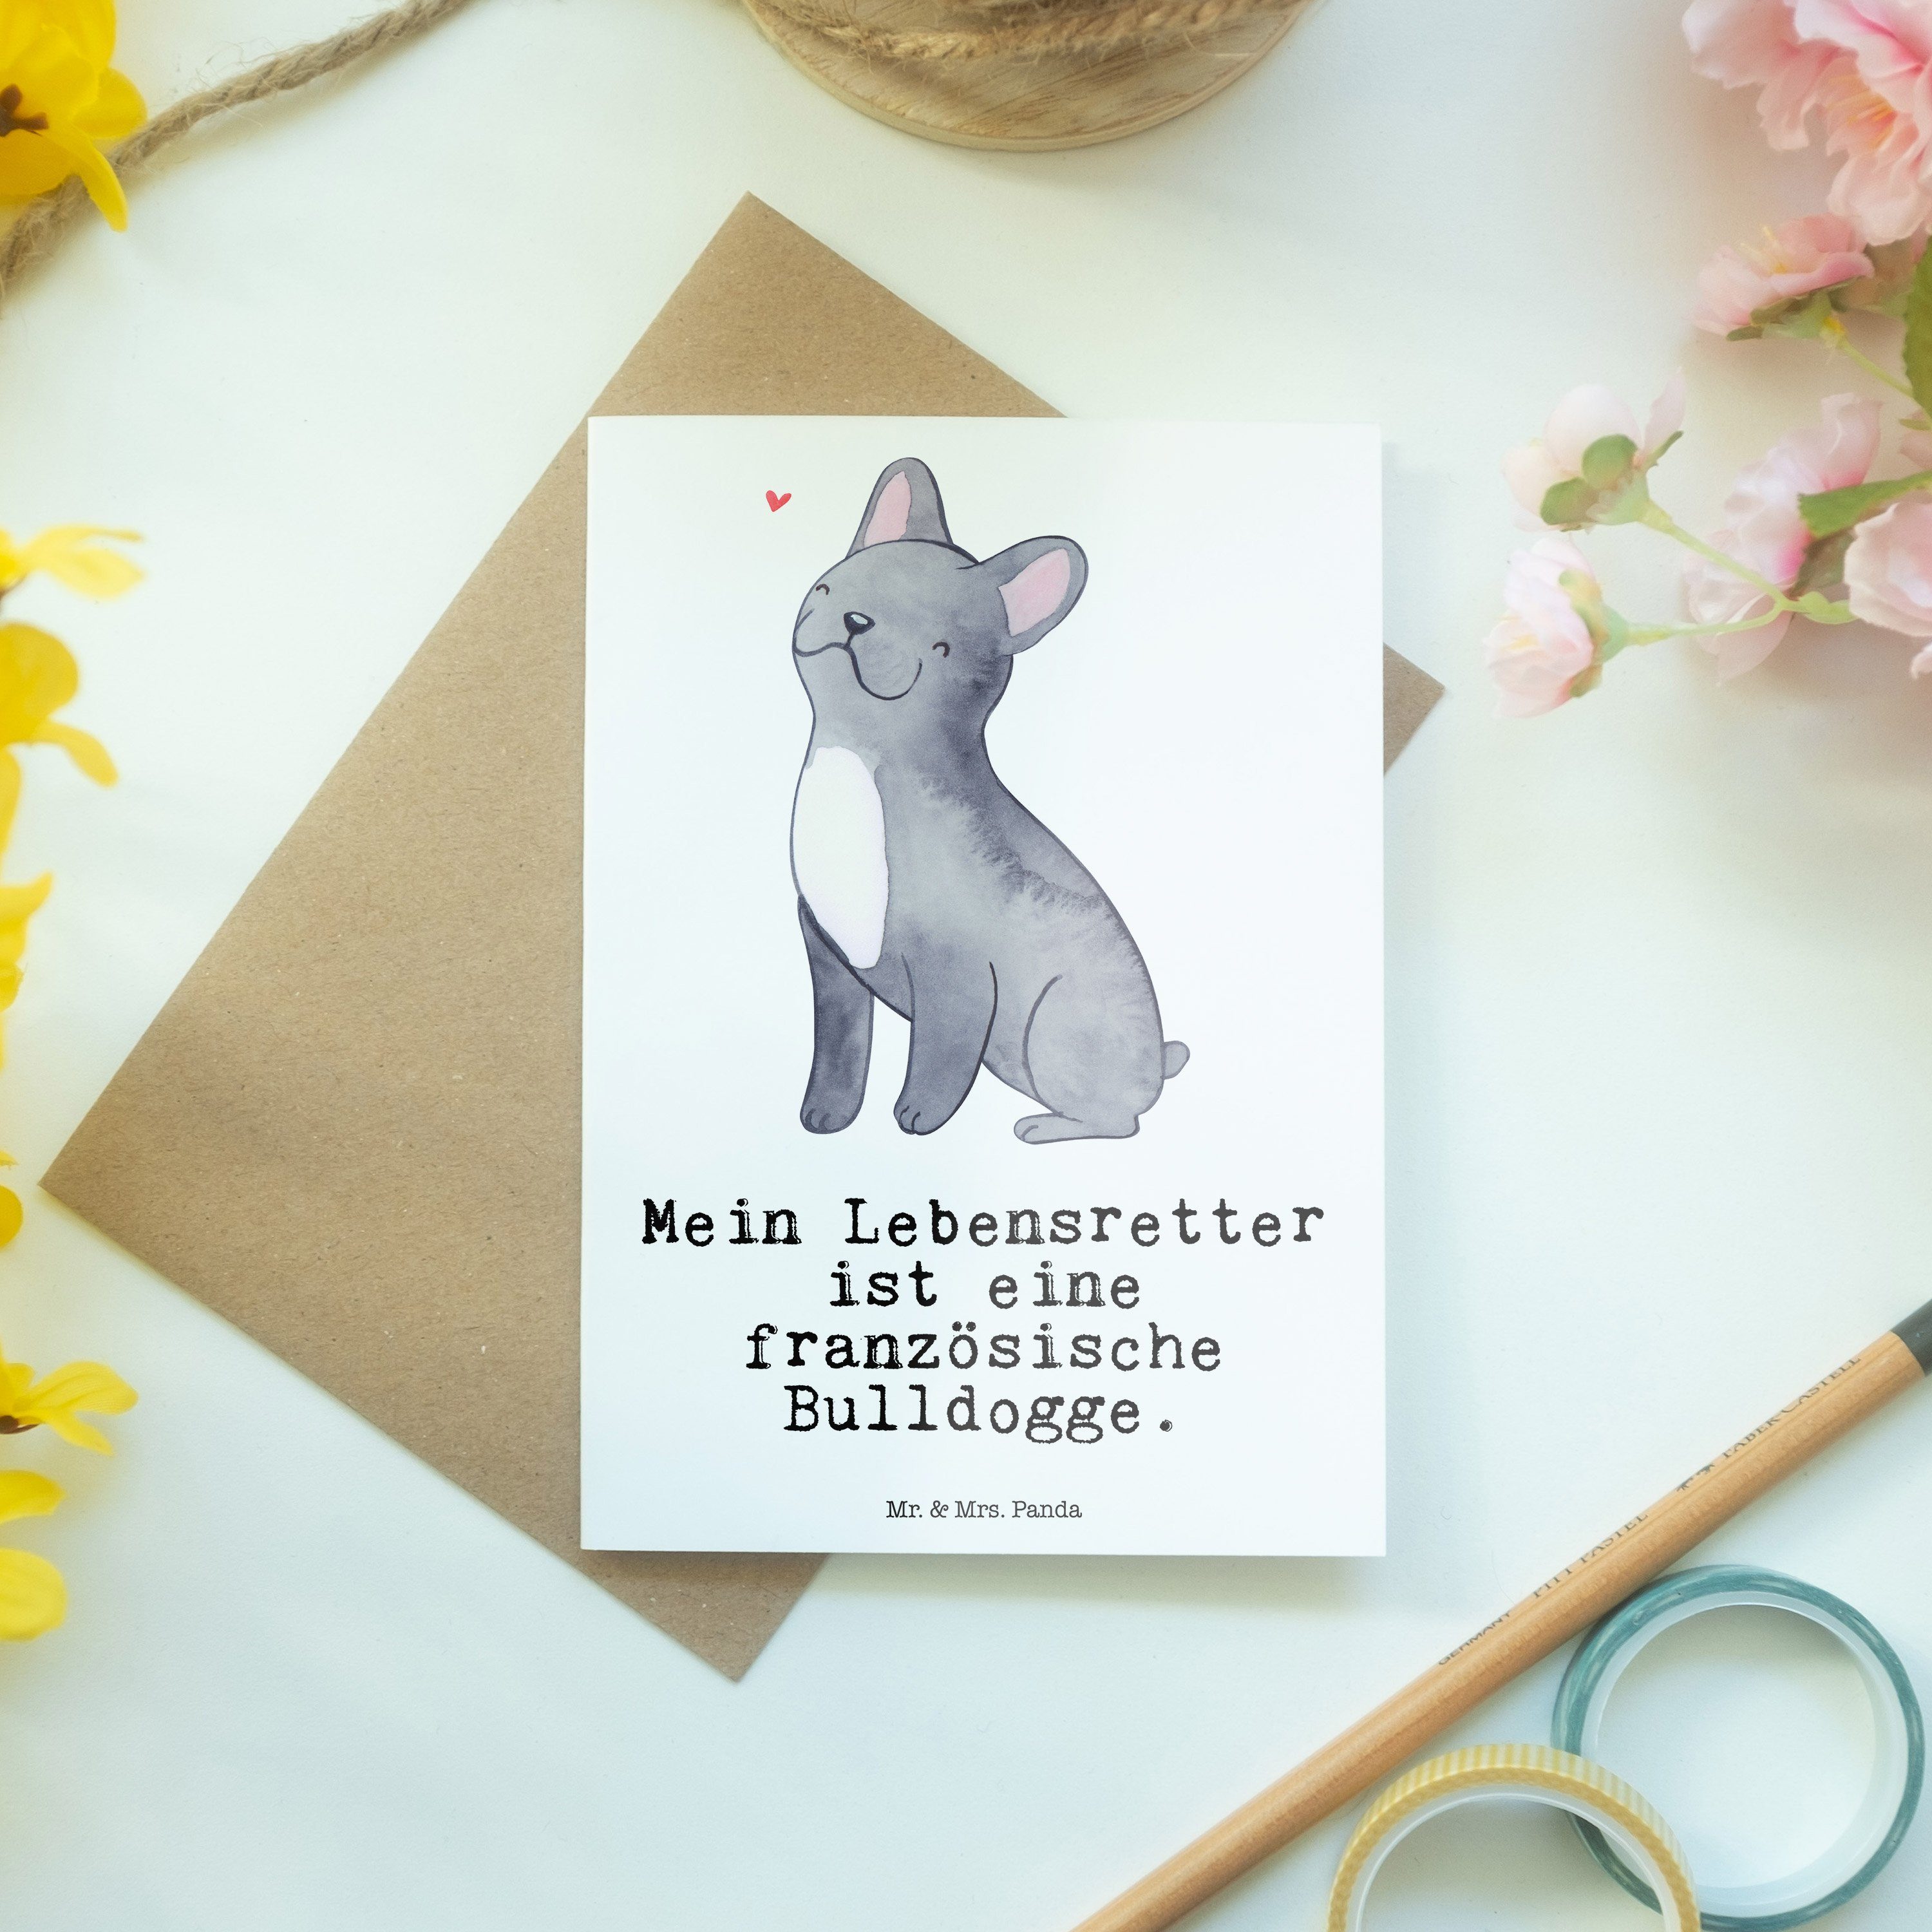 Mr. & Weiß Grußkarte - Mrs. Panda Lebensretter Geschenk, Bulldogge - Französische Geburtstagskar